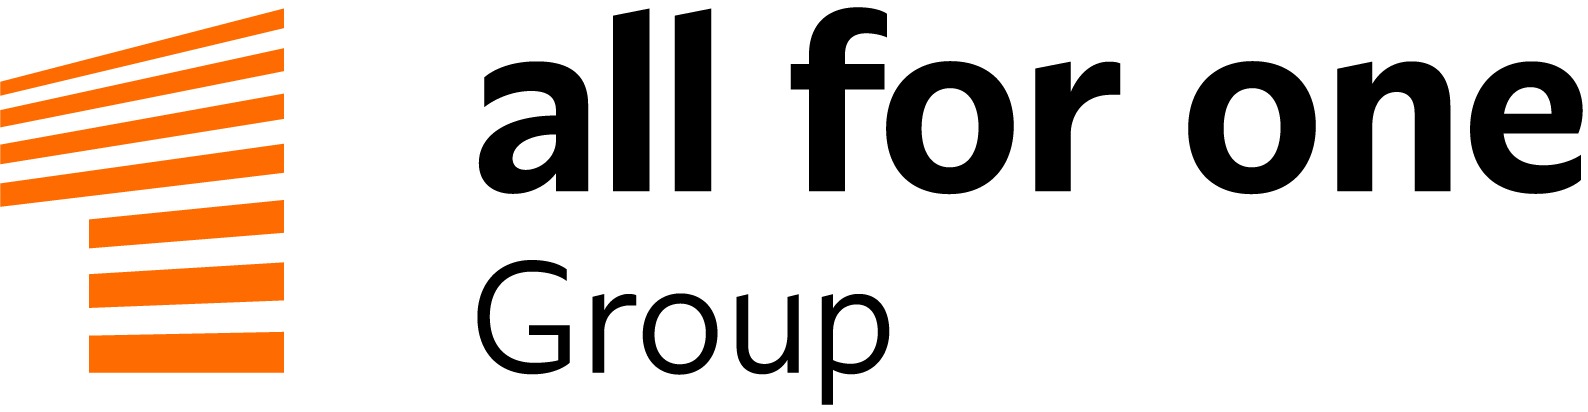 All for One Group SE: Die Wettbewerbsstärke ihrer Kunden im Blick: All for One Group stärkt Zukunftsfelder / neuer Marktauftritt ab 11. April (FOTO)